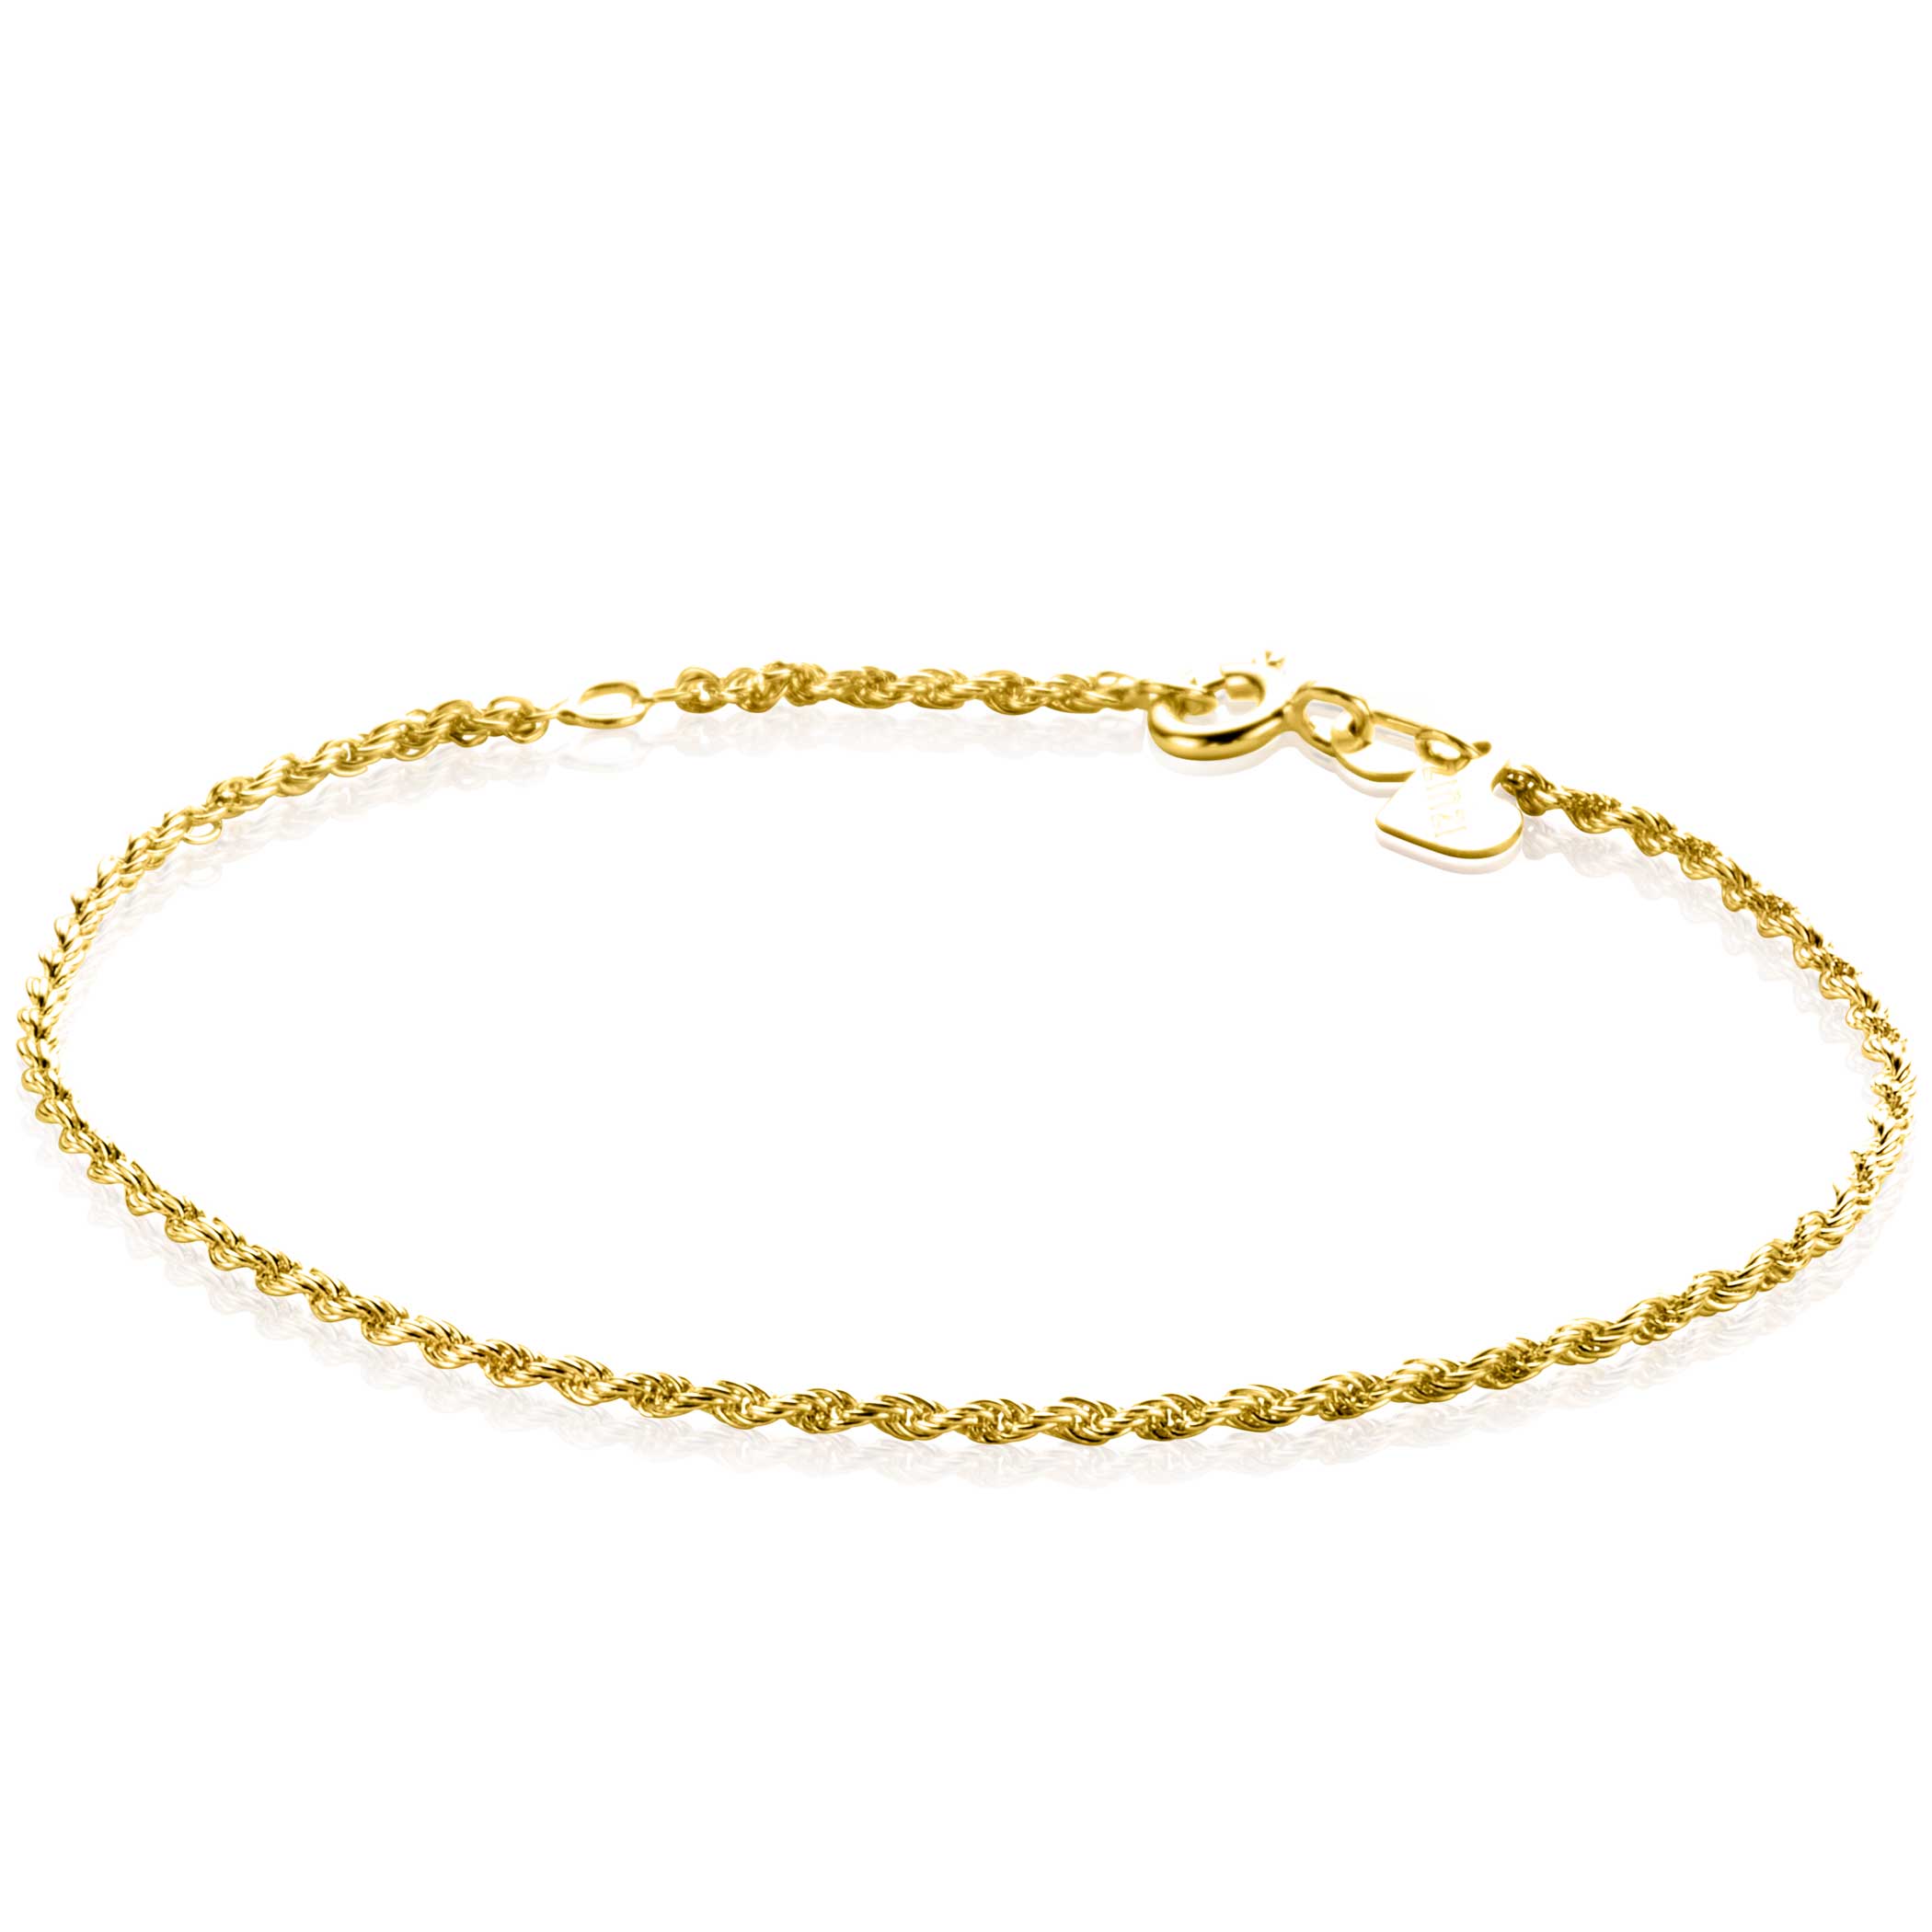 Gentleman vriendelijk bolvormig Lao ZINZI Gold 14 krt gouden koord armband 1,6mm breed, lengte 17-19cm ZGA398